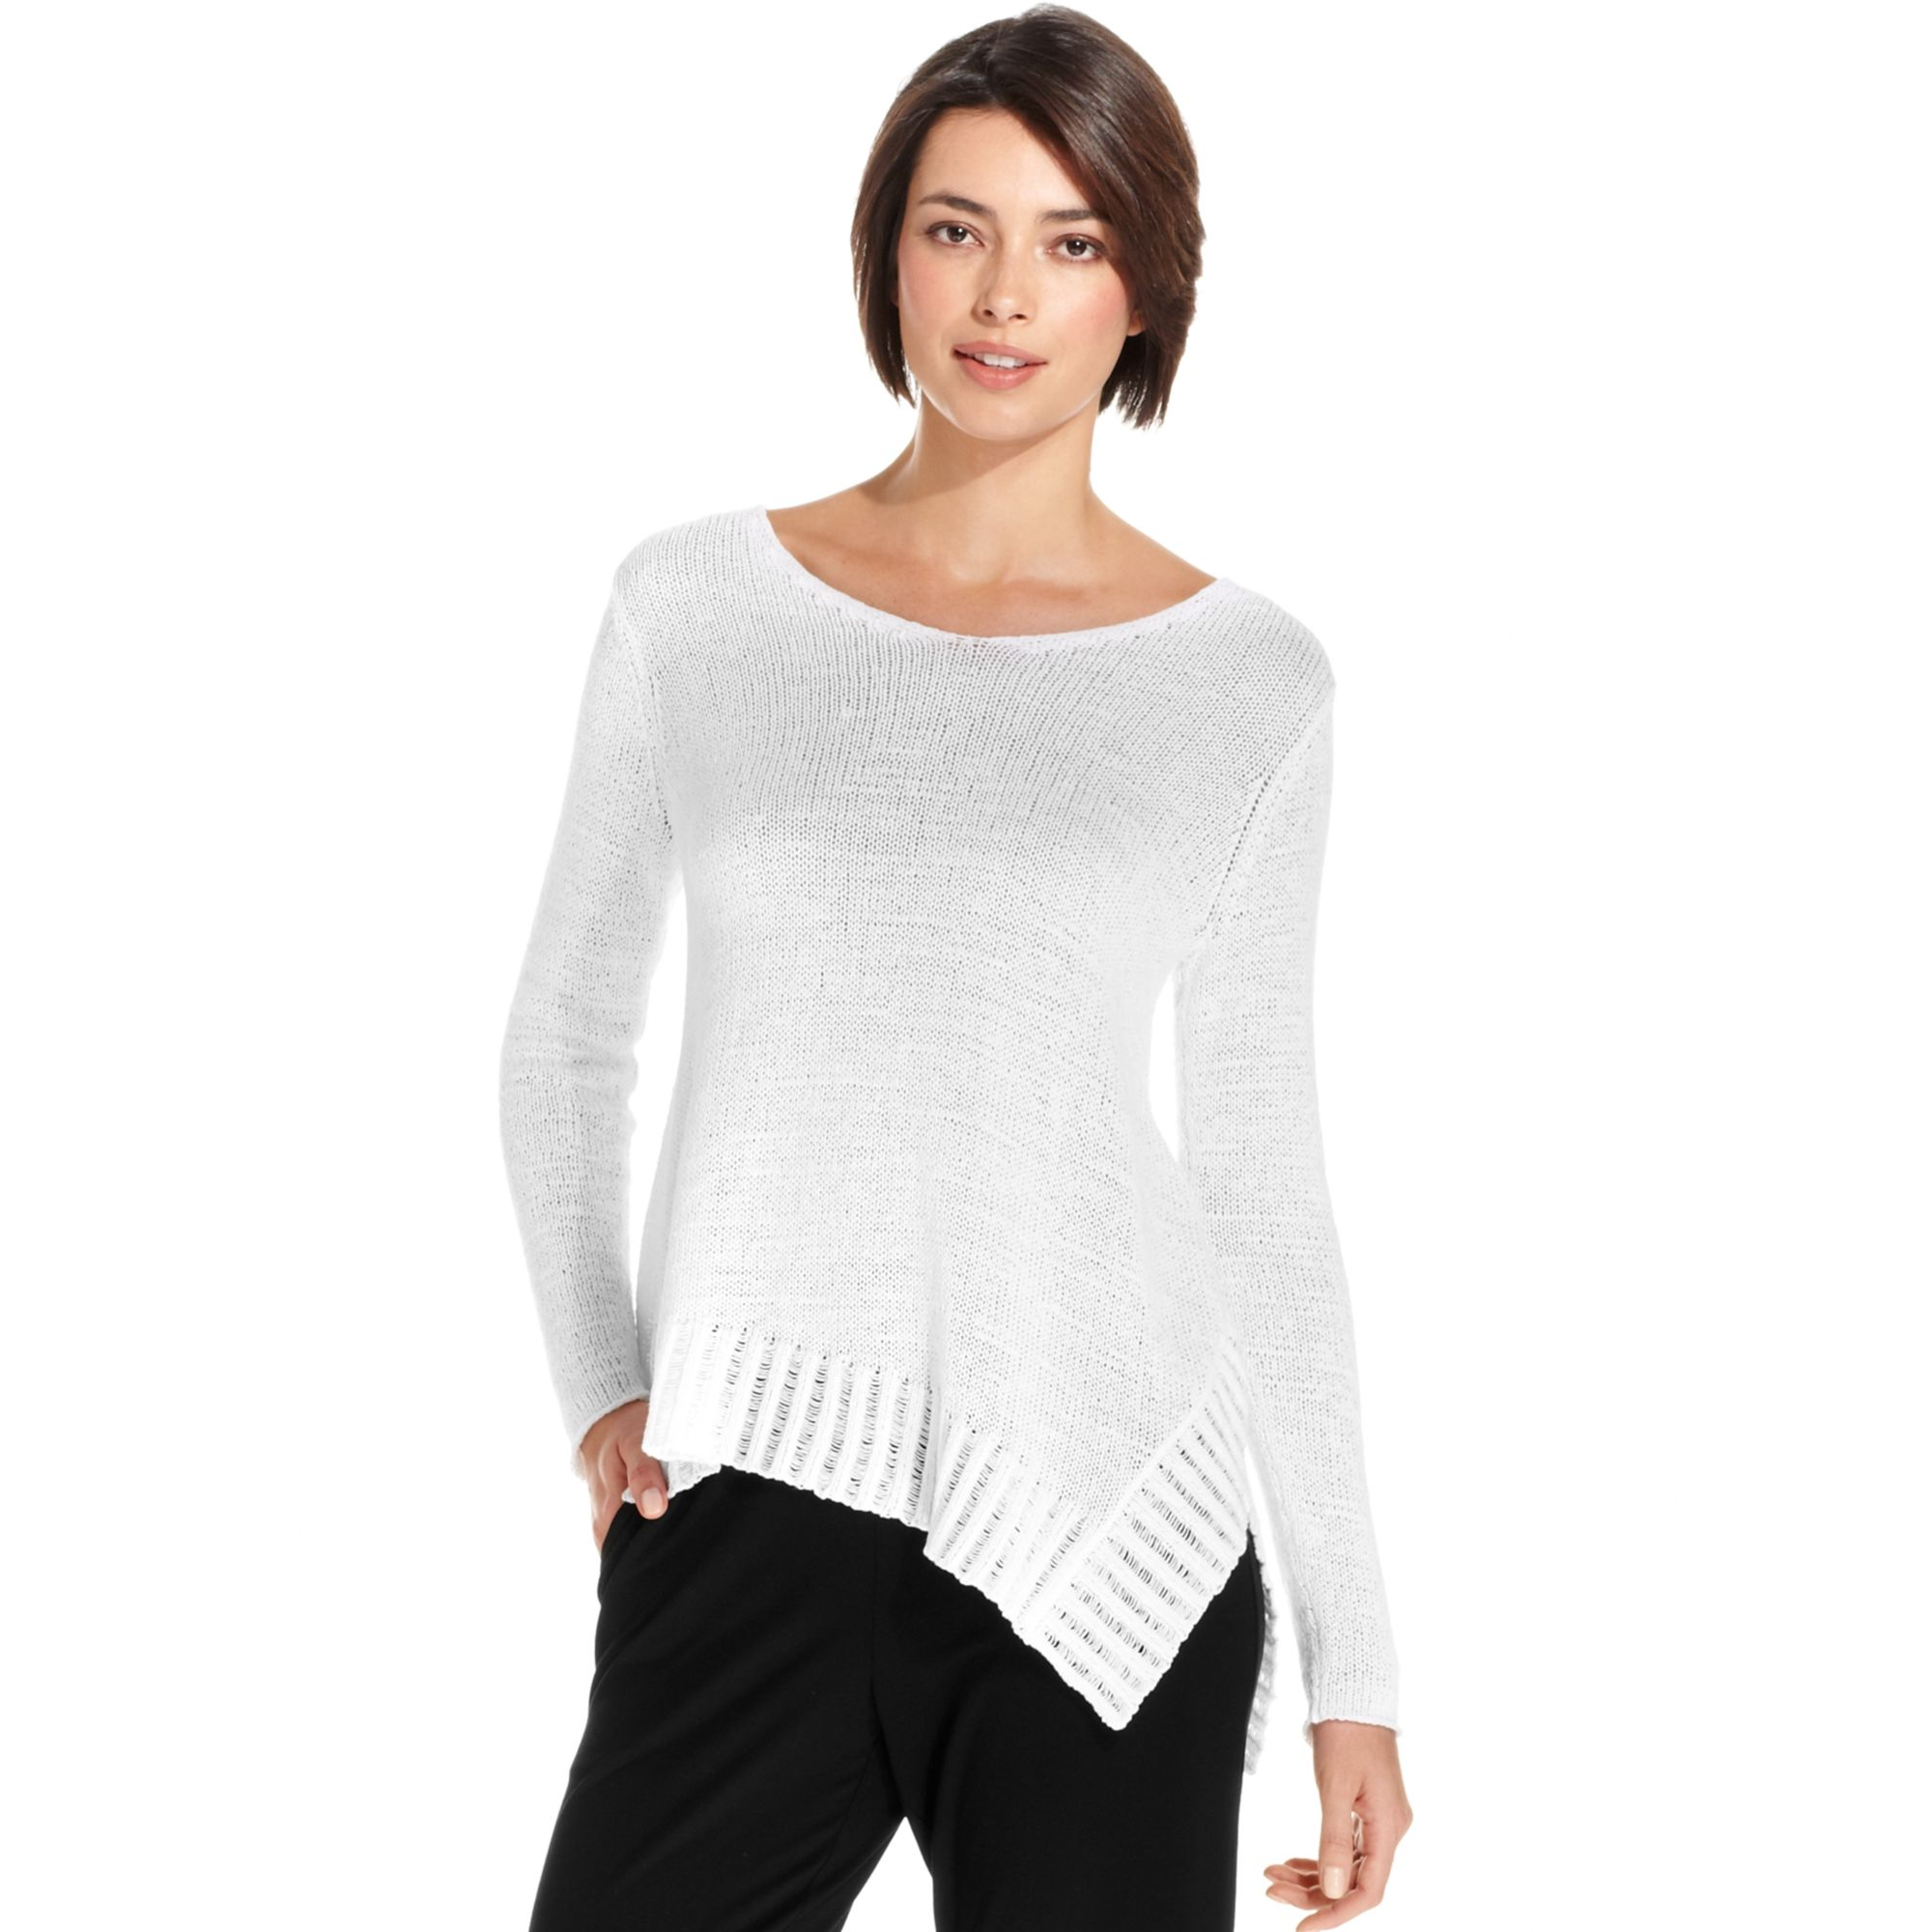 Eileen fisher Longsleeve Asymmetricalhem Sweater Tunic in White | Lyst